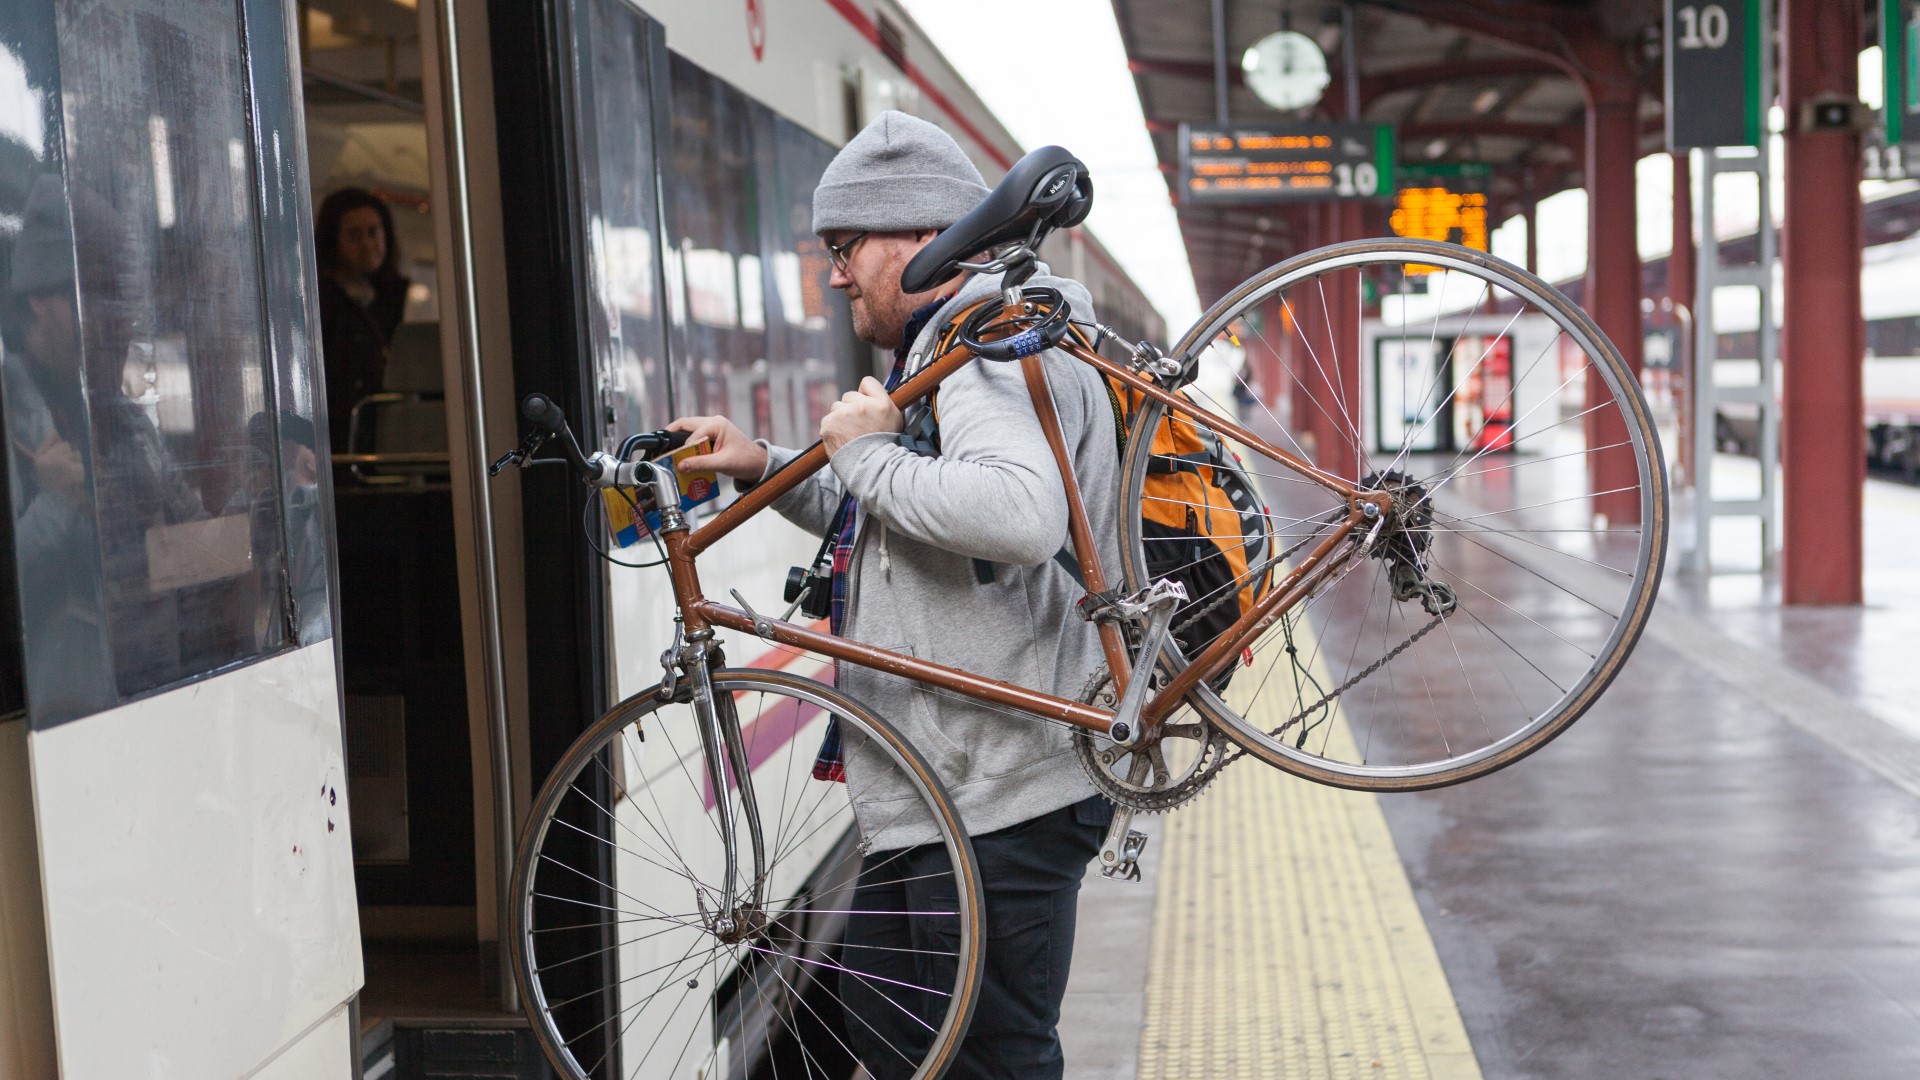 Mand med cykel på vej ind i tog